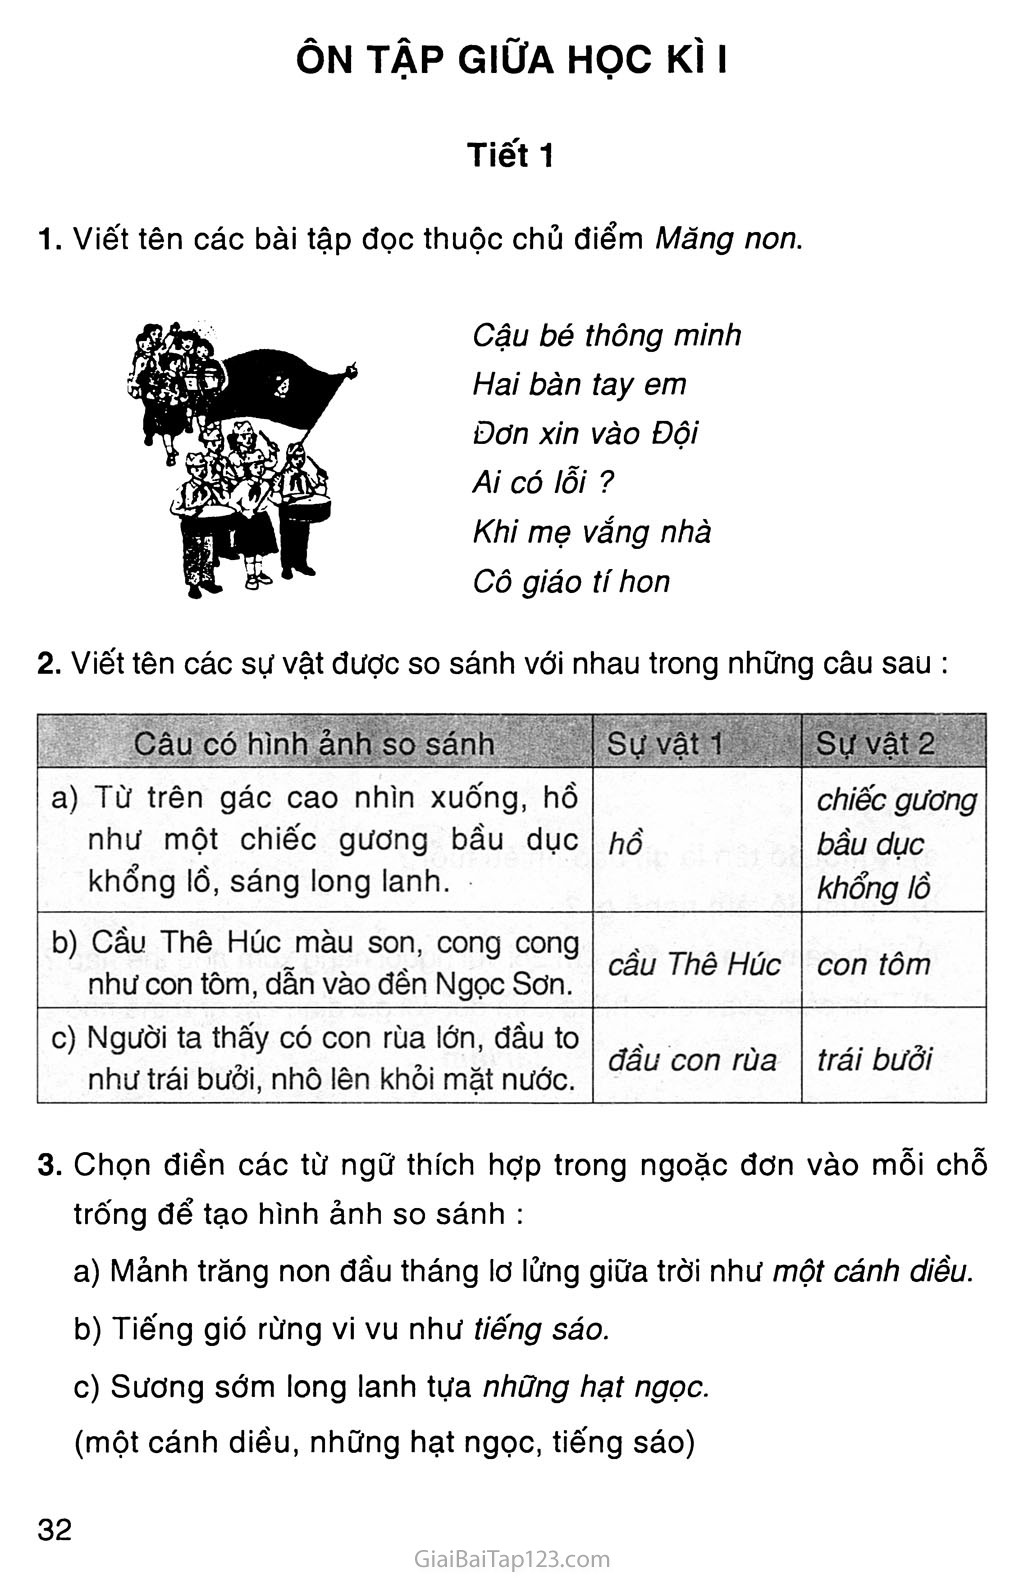 Bạn đang tìm kiếm cách để giải quyết bài tập Tiếng Việt lớp 3 của mình một cách dễ dàng và nhanh chóng? Hãy xem hình ảnh liên quan đến từ khóa này để tìm hiểu các giải pháp thông minh và hiệu quả nhất để hoàn thành bài tập của bạn.